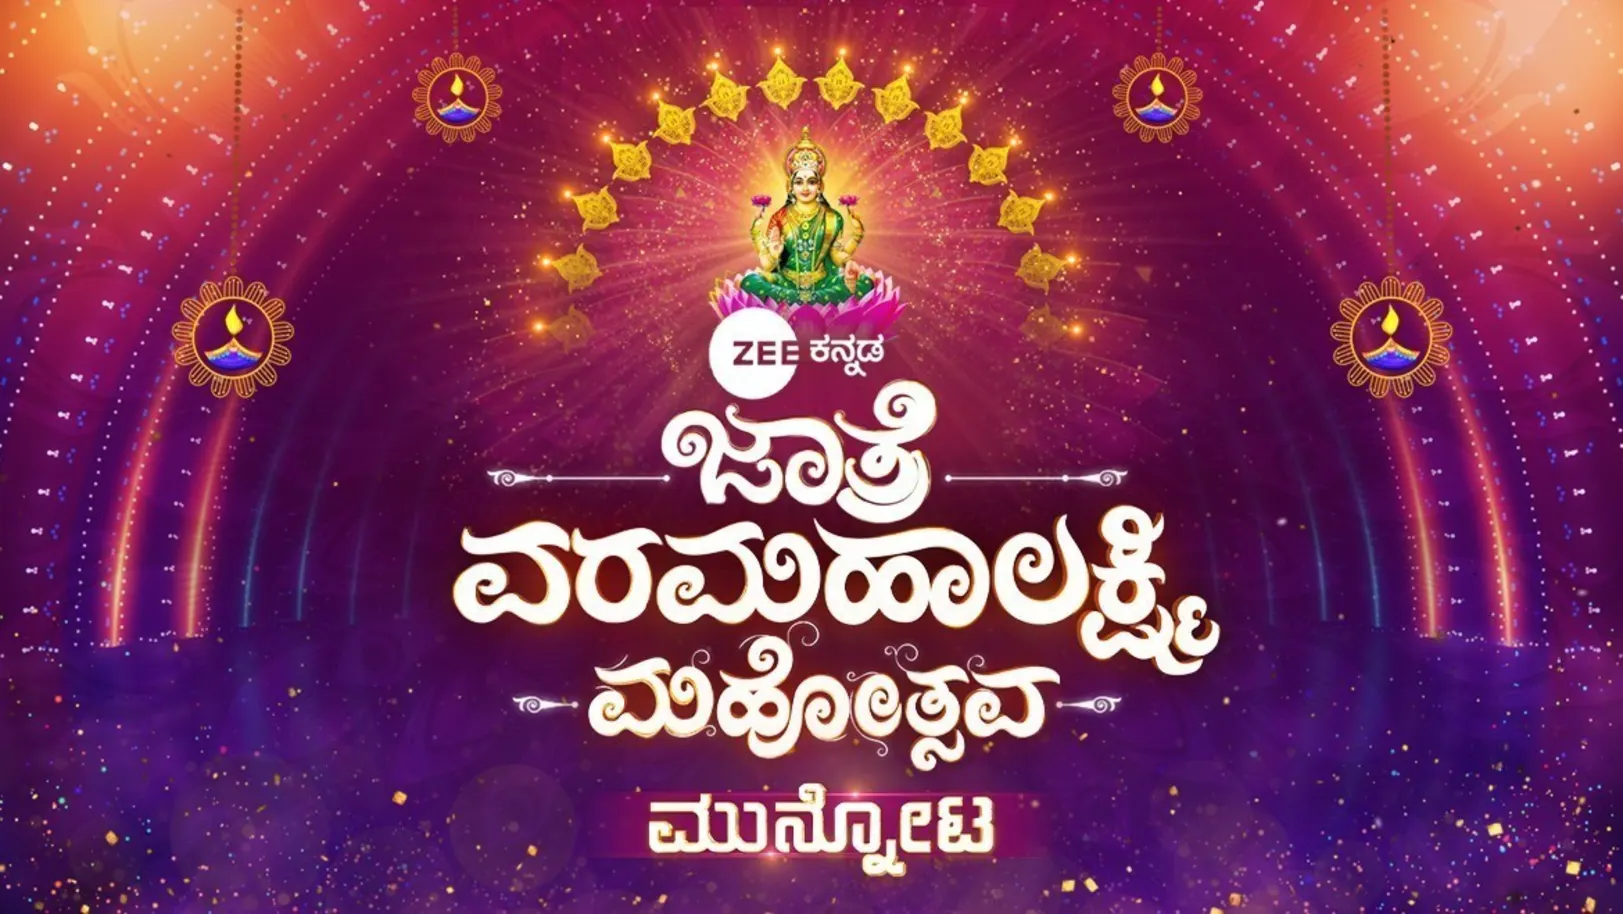 ZEE Kannada Jaatre Varamahalakshmi Mahotsava TV Show